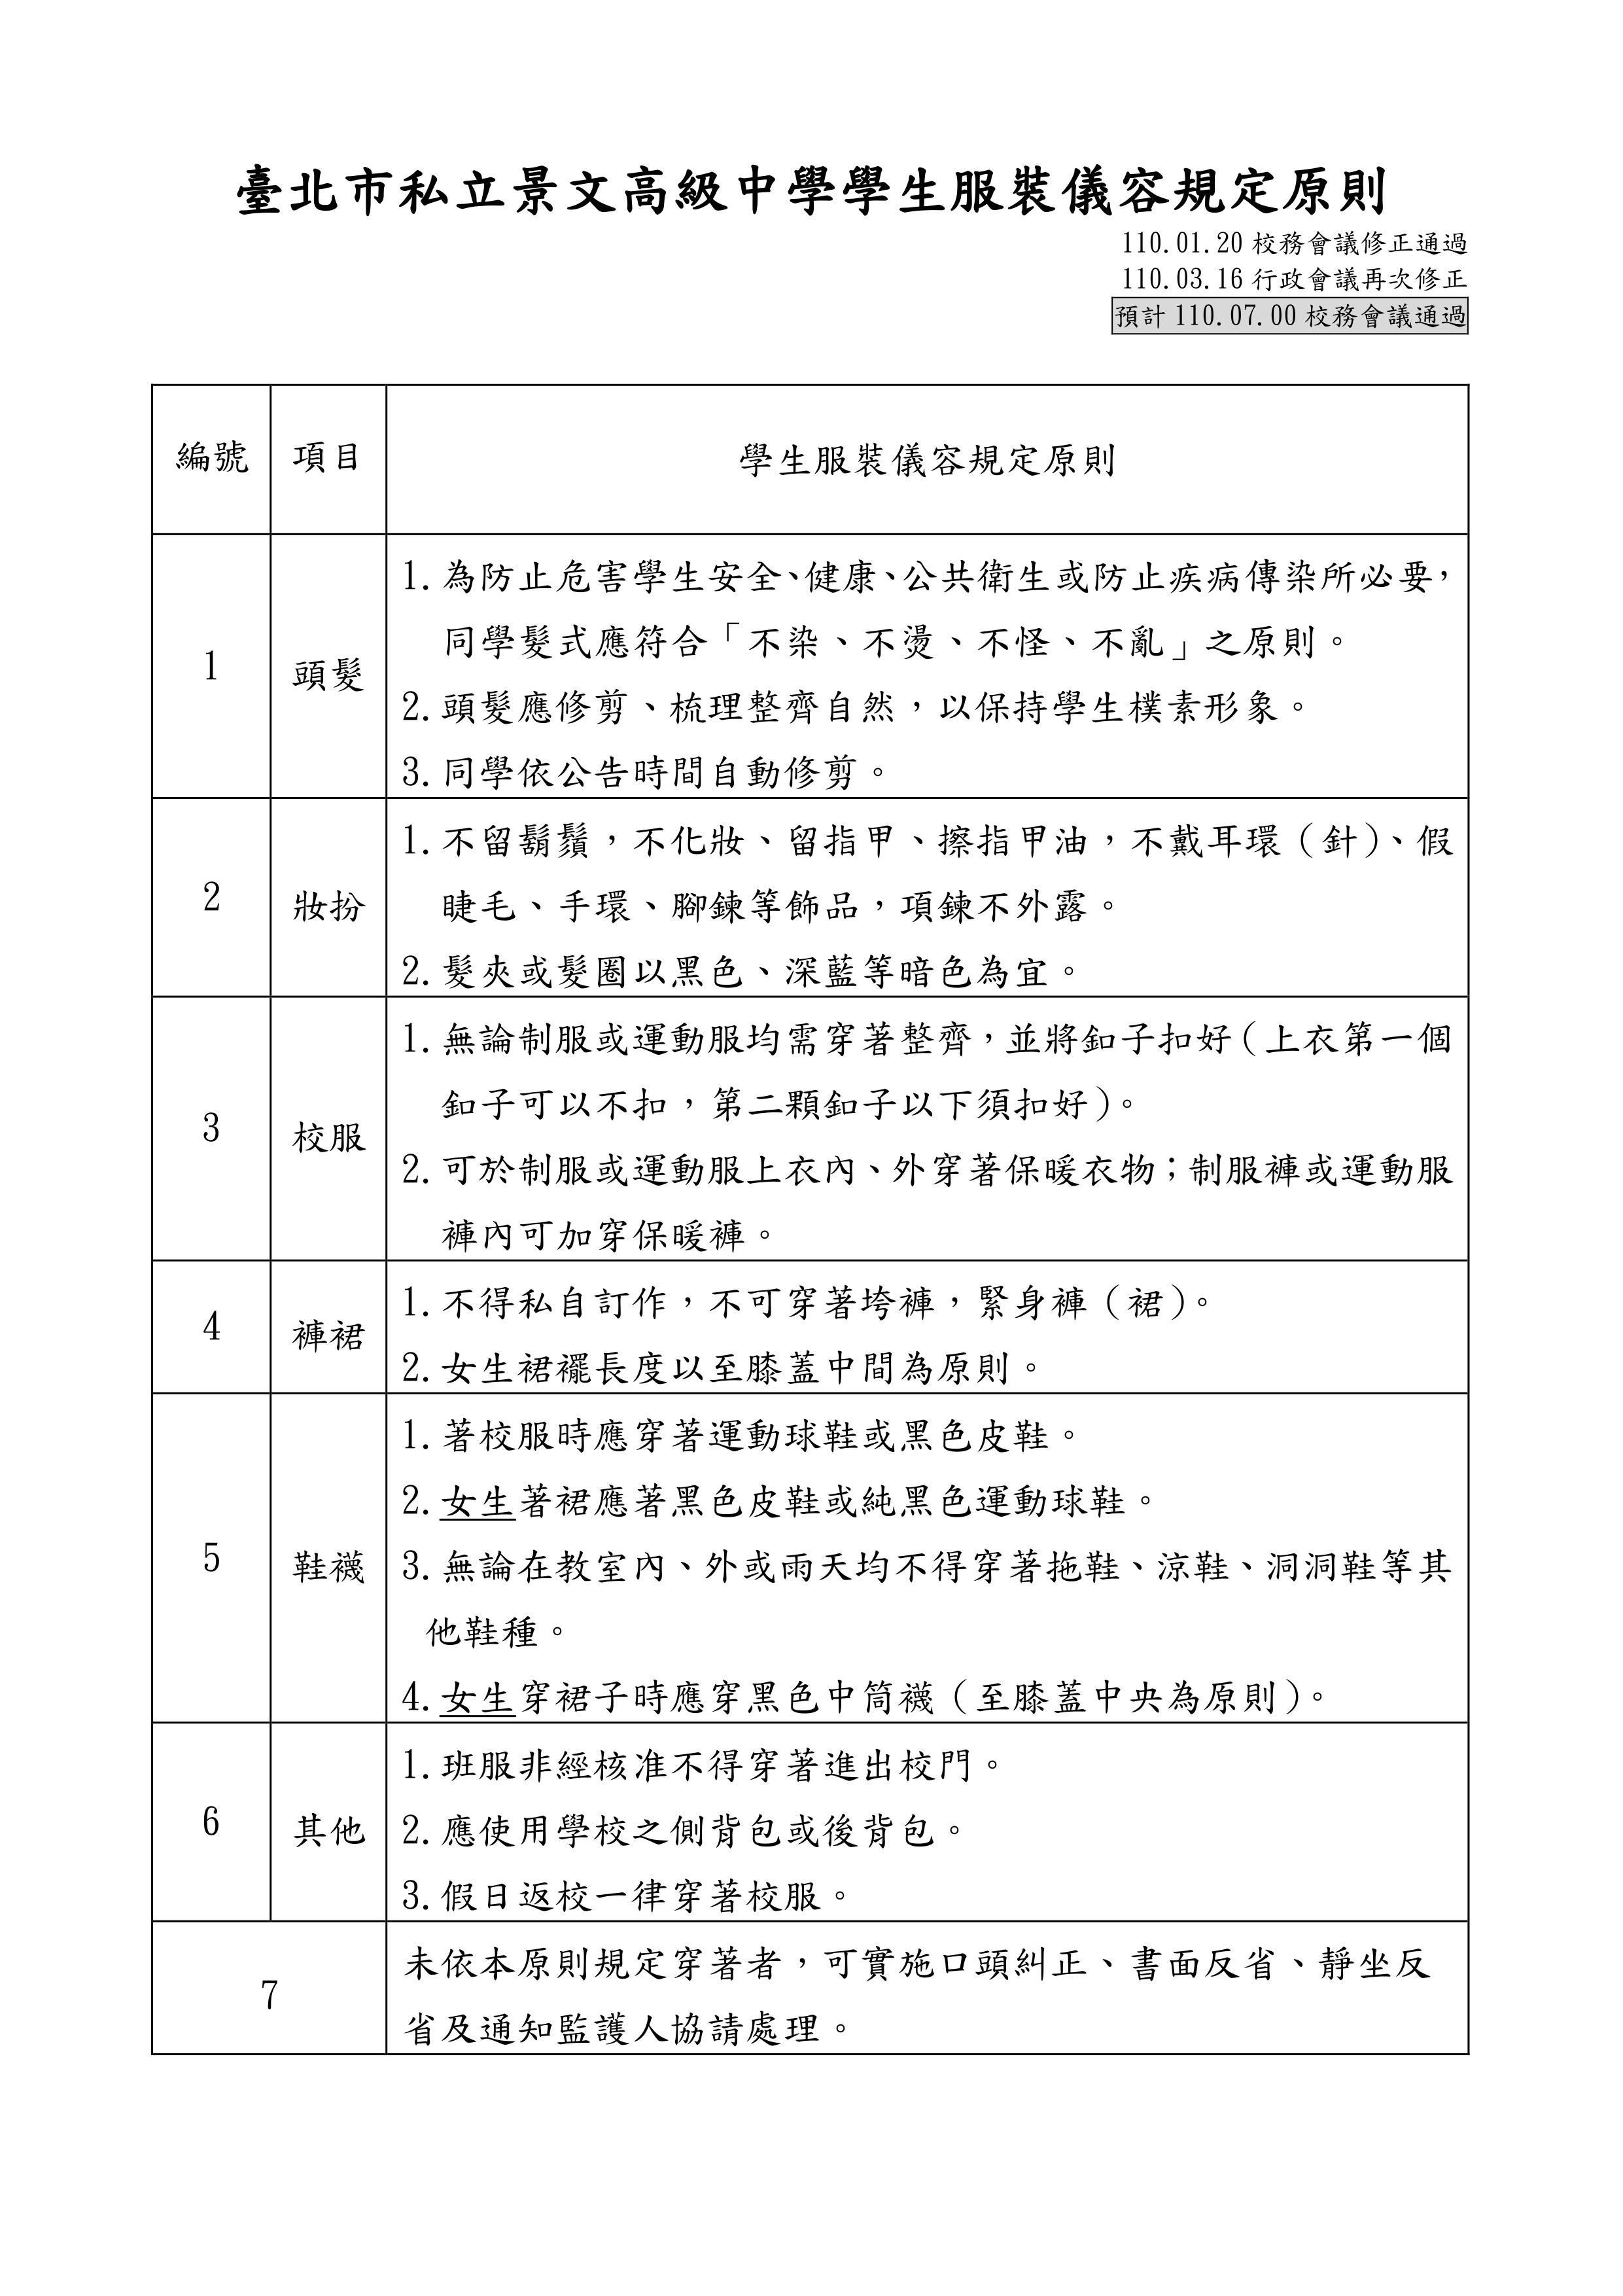 臺北市私立景文高級中學學生服裝儀容 規定原則